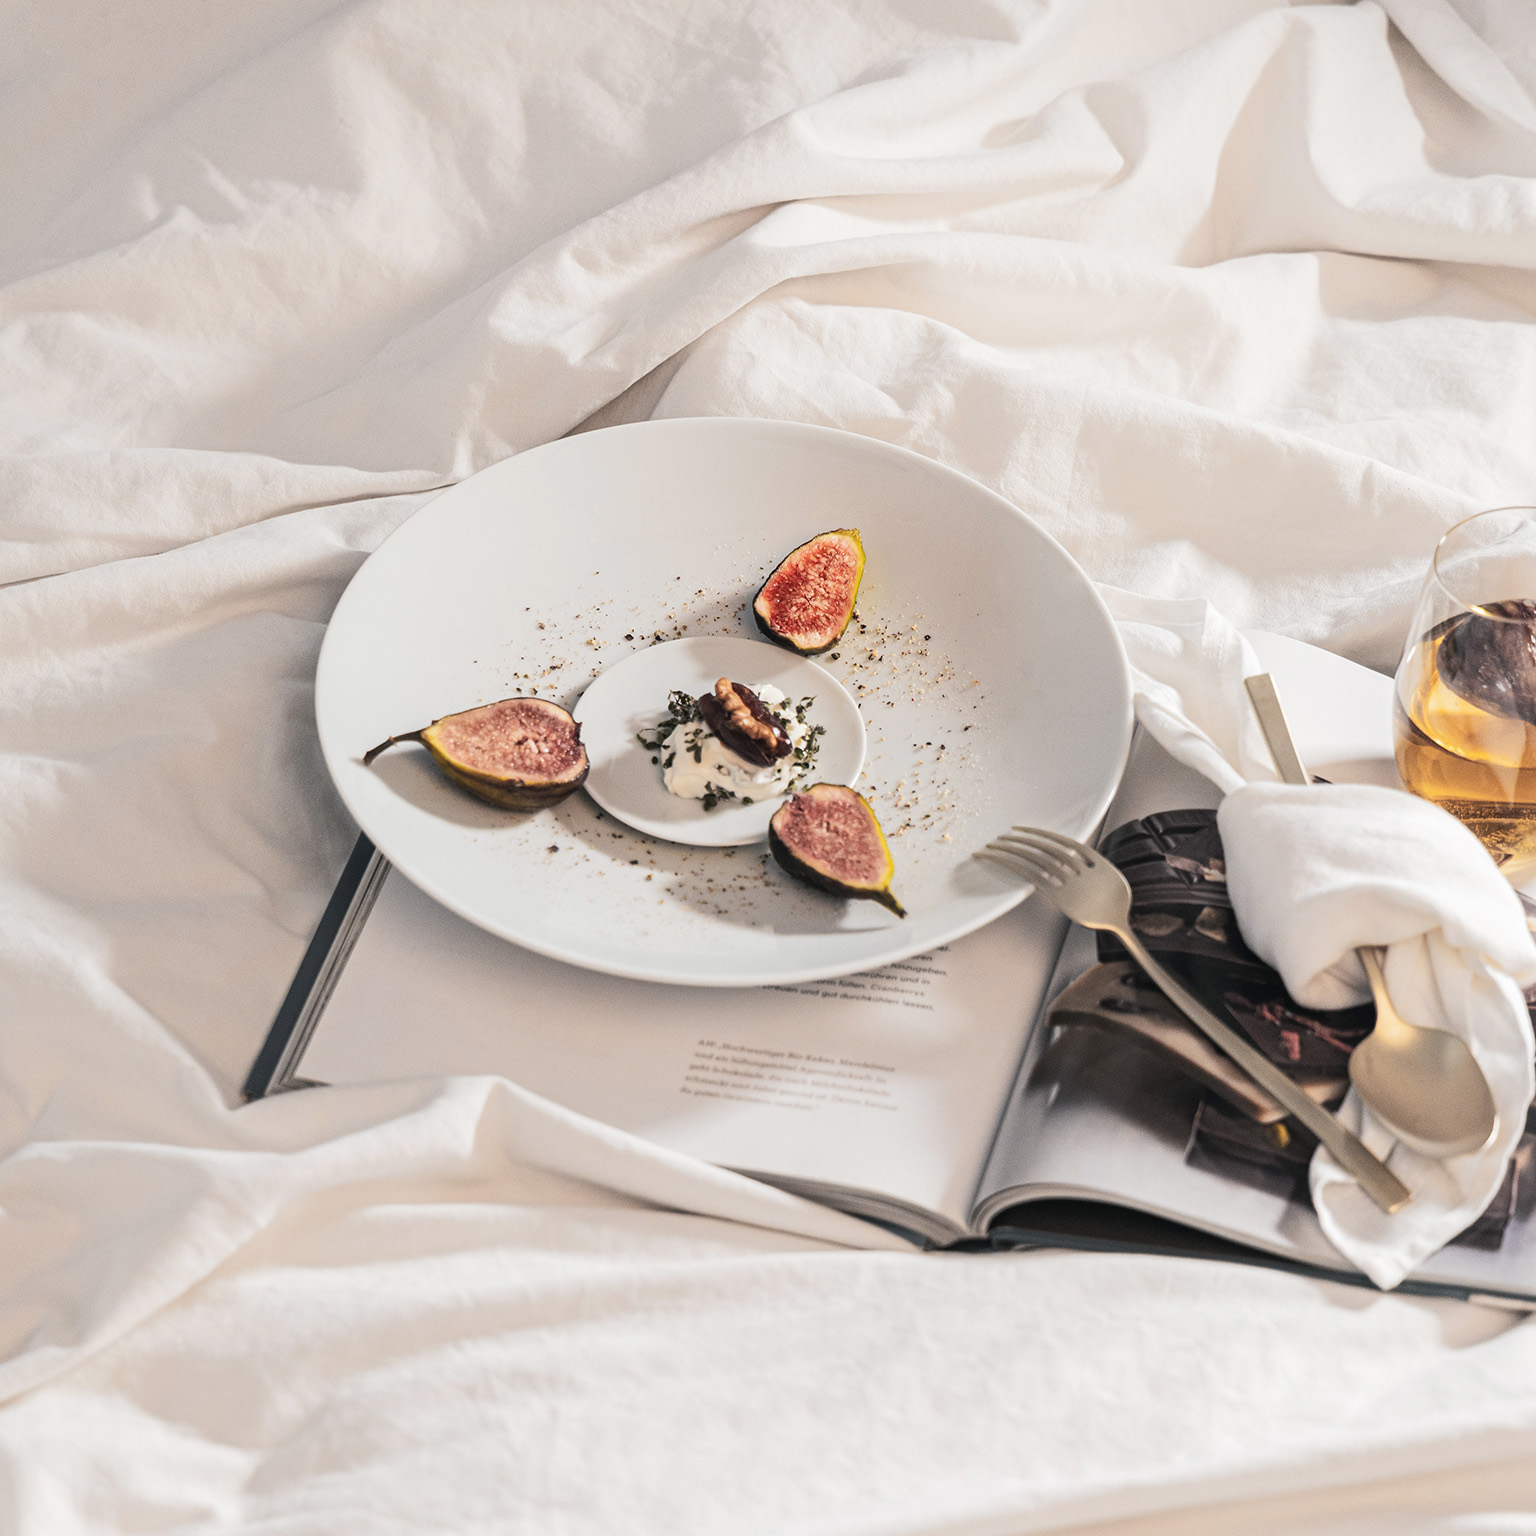 TAC Teller und Brotteller mit Feigen und Dessert garniert, liegen zusammen mit einem aufgeschlagenen Buch, Besteck, weißer Serviette und Glas auf einem Tischlaken.